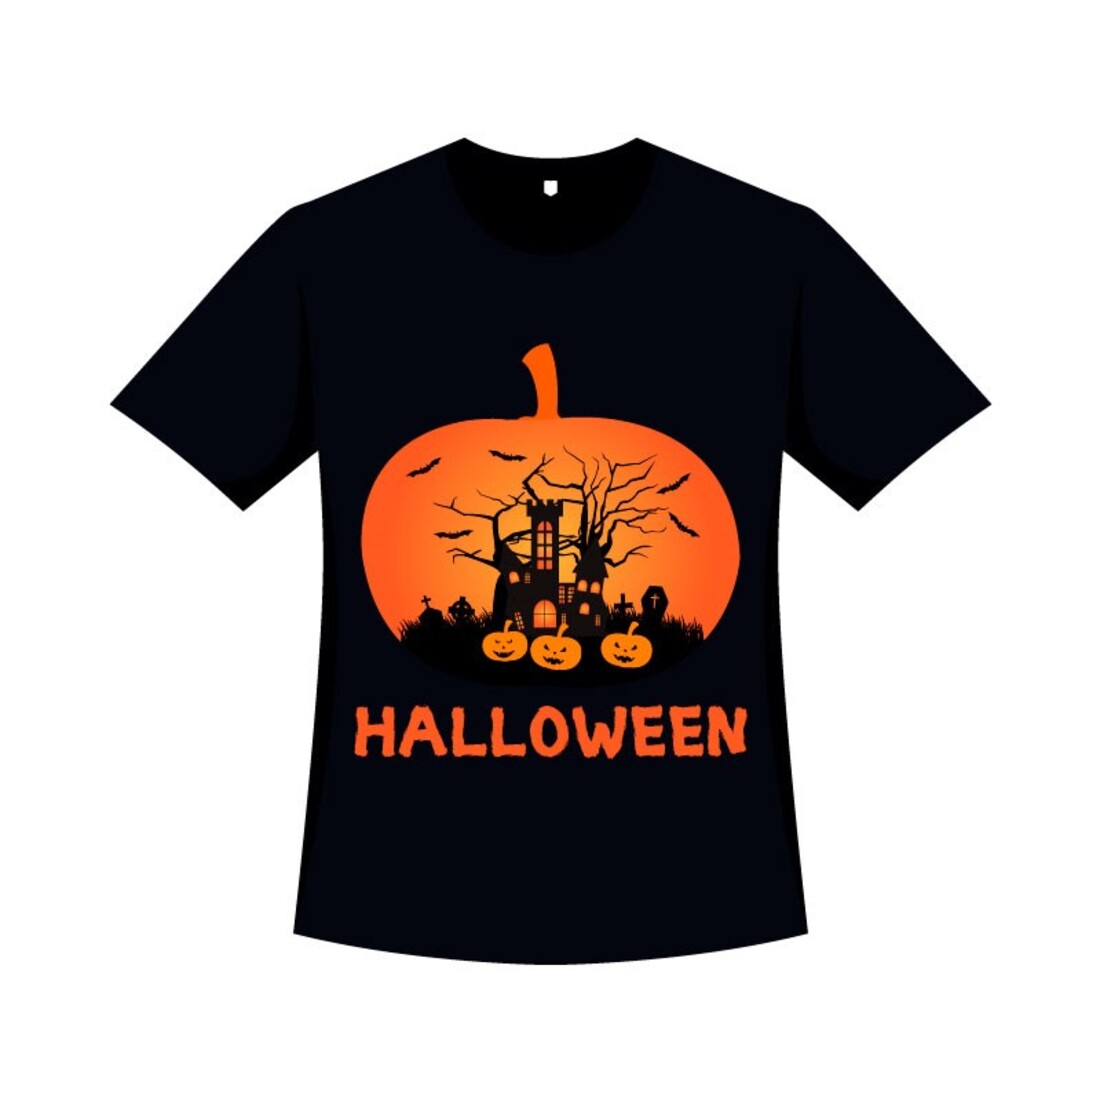 Halloween Horrifying T-shirt Design cover image.